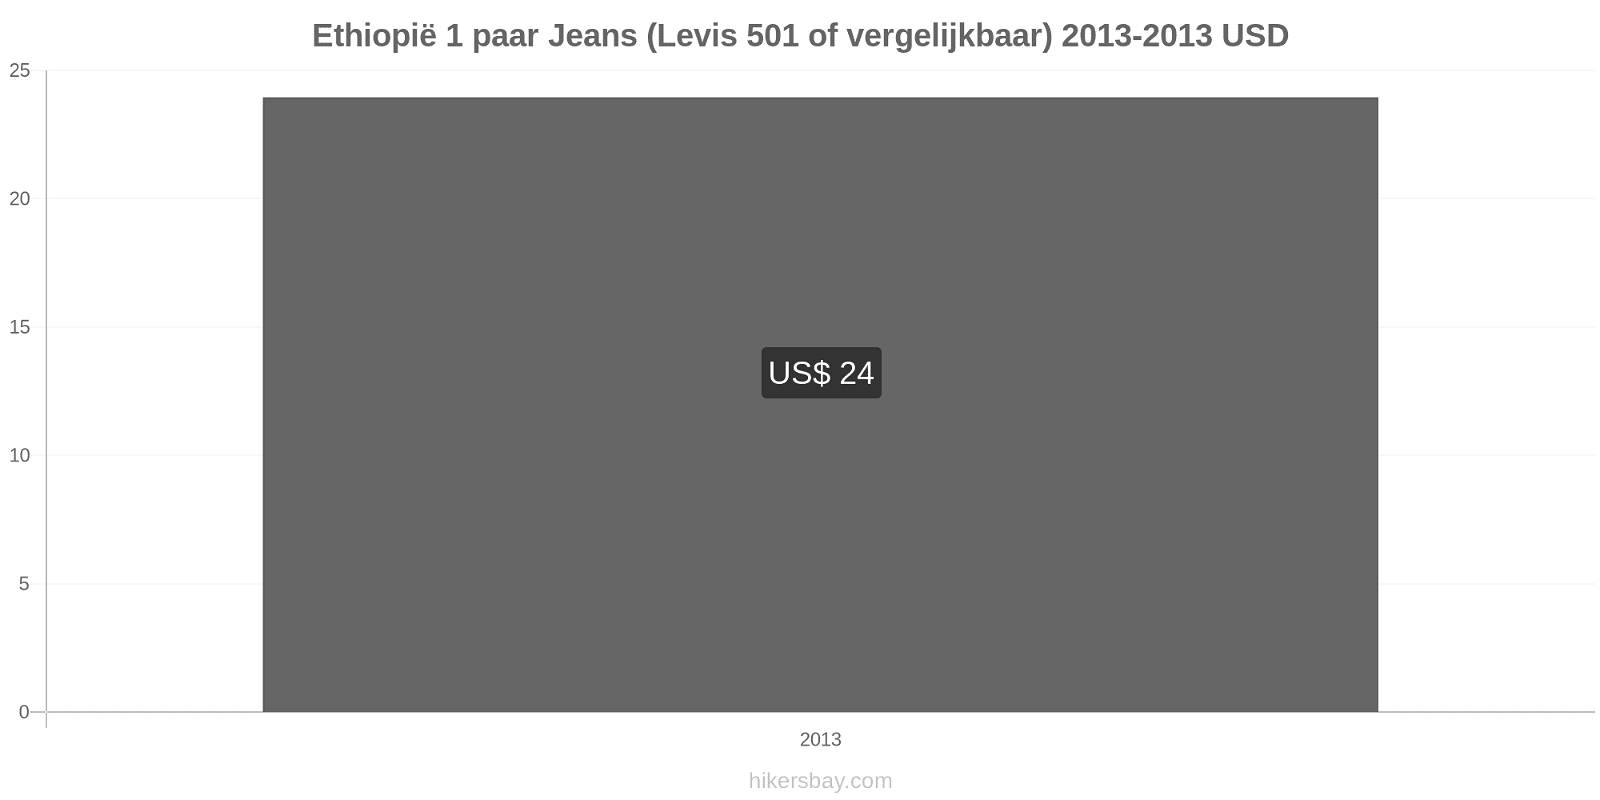 Ethiopië prijswijzigingen 1 paar jeans (Levis 501 of vergelijkbaar) hikersbay.com